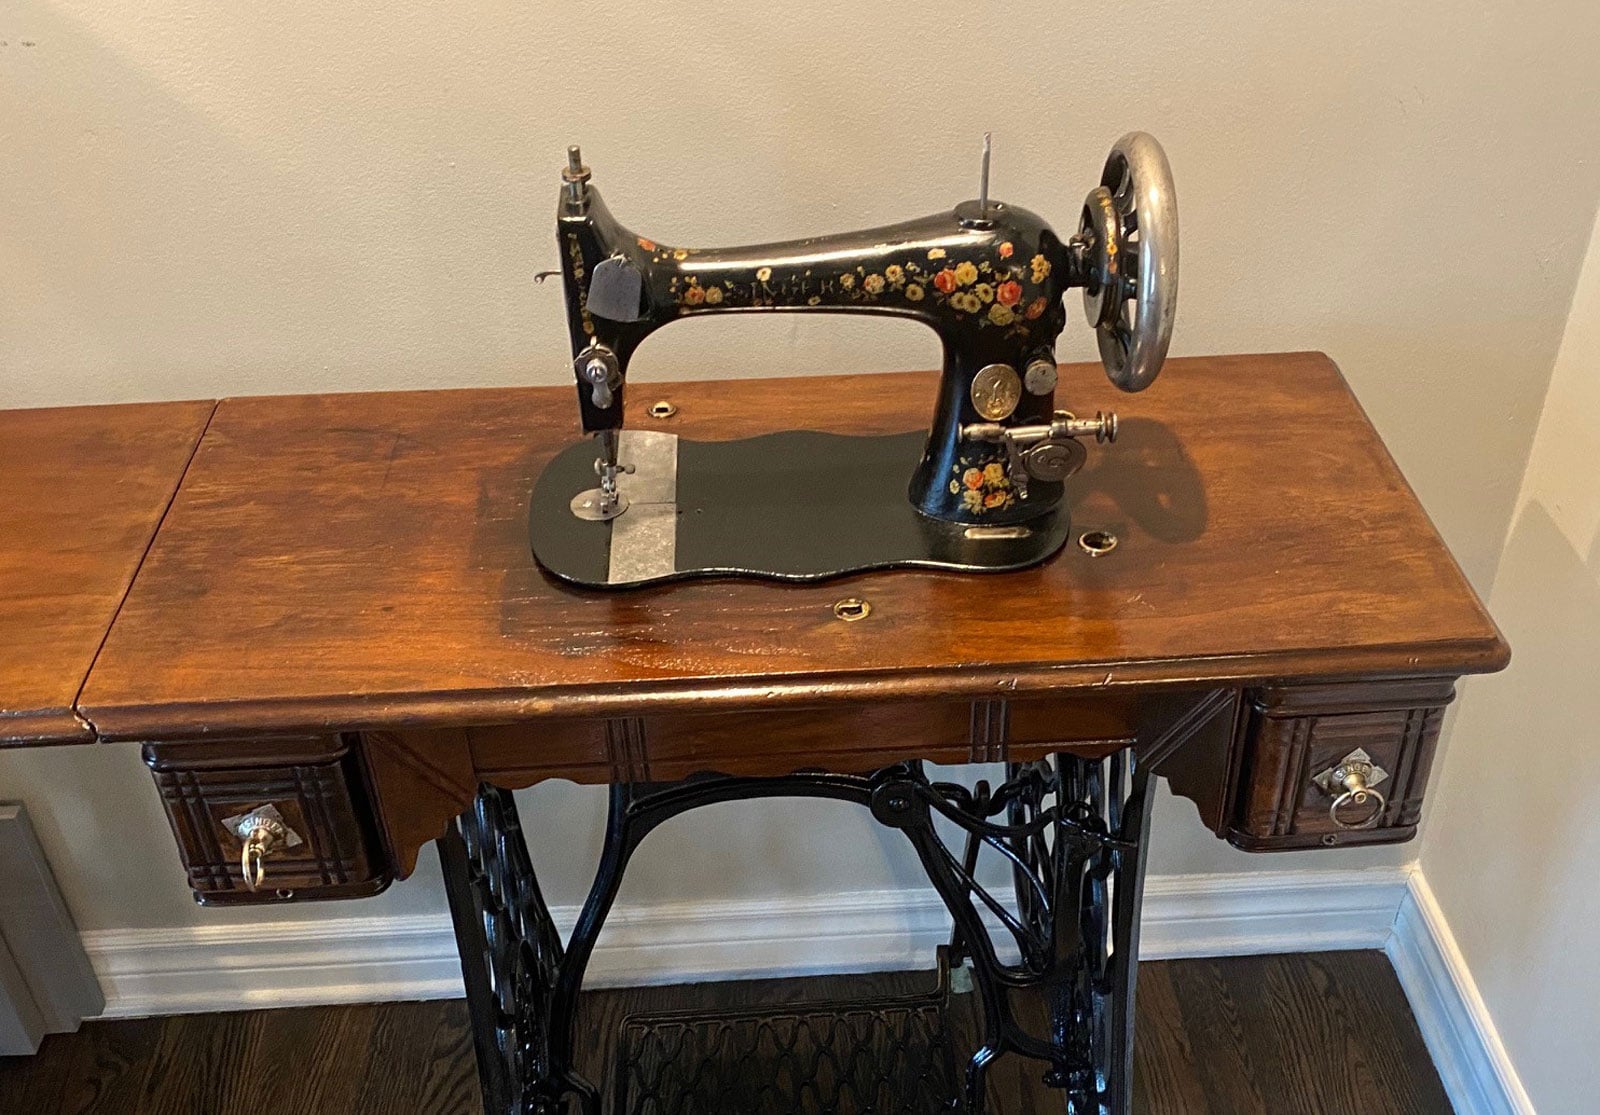 Sewing Machine restoration - after